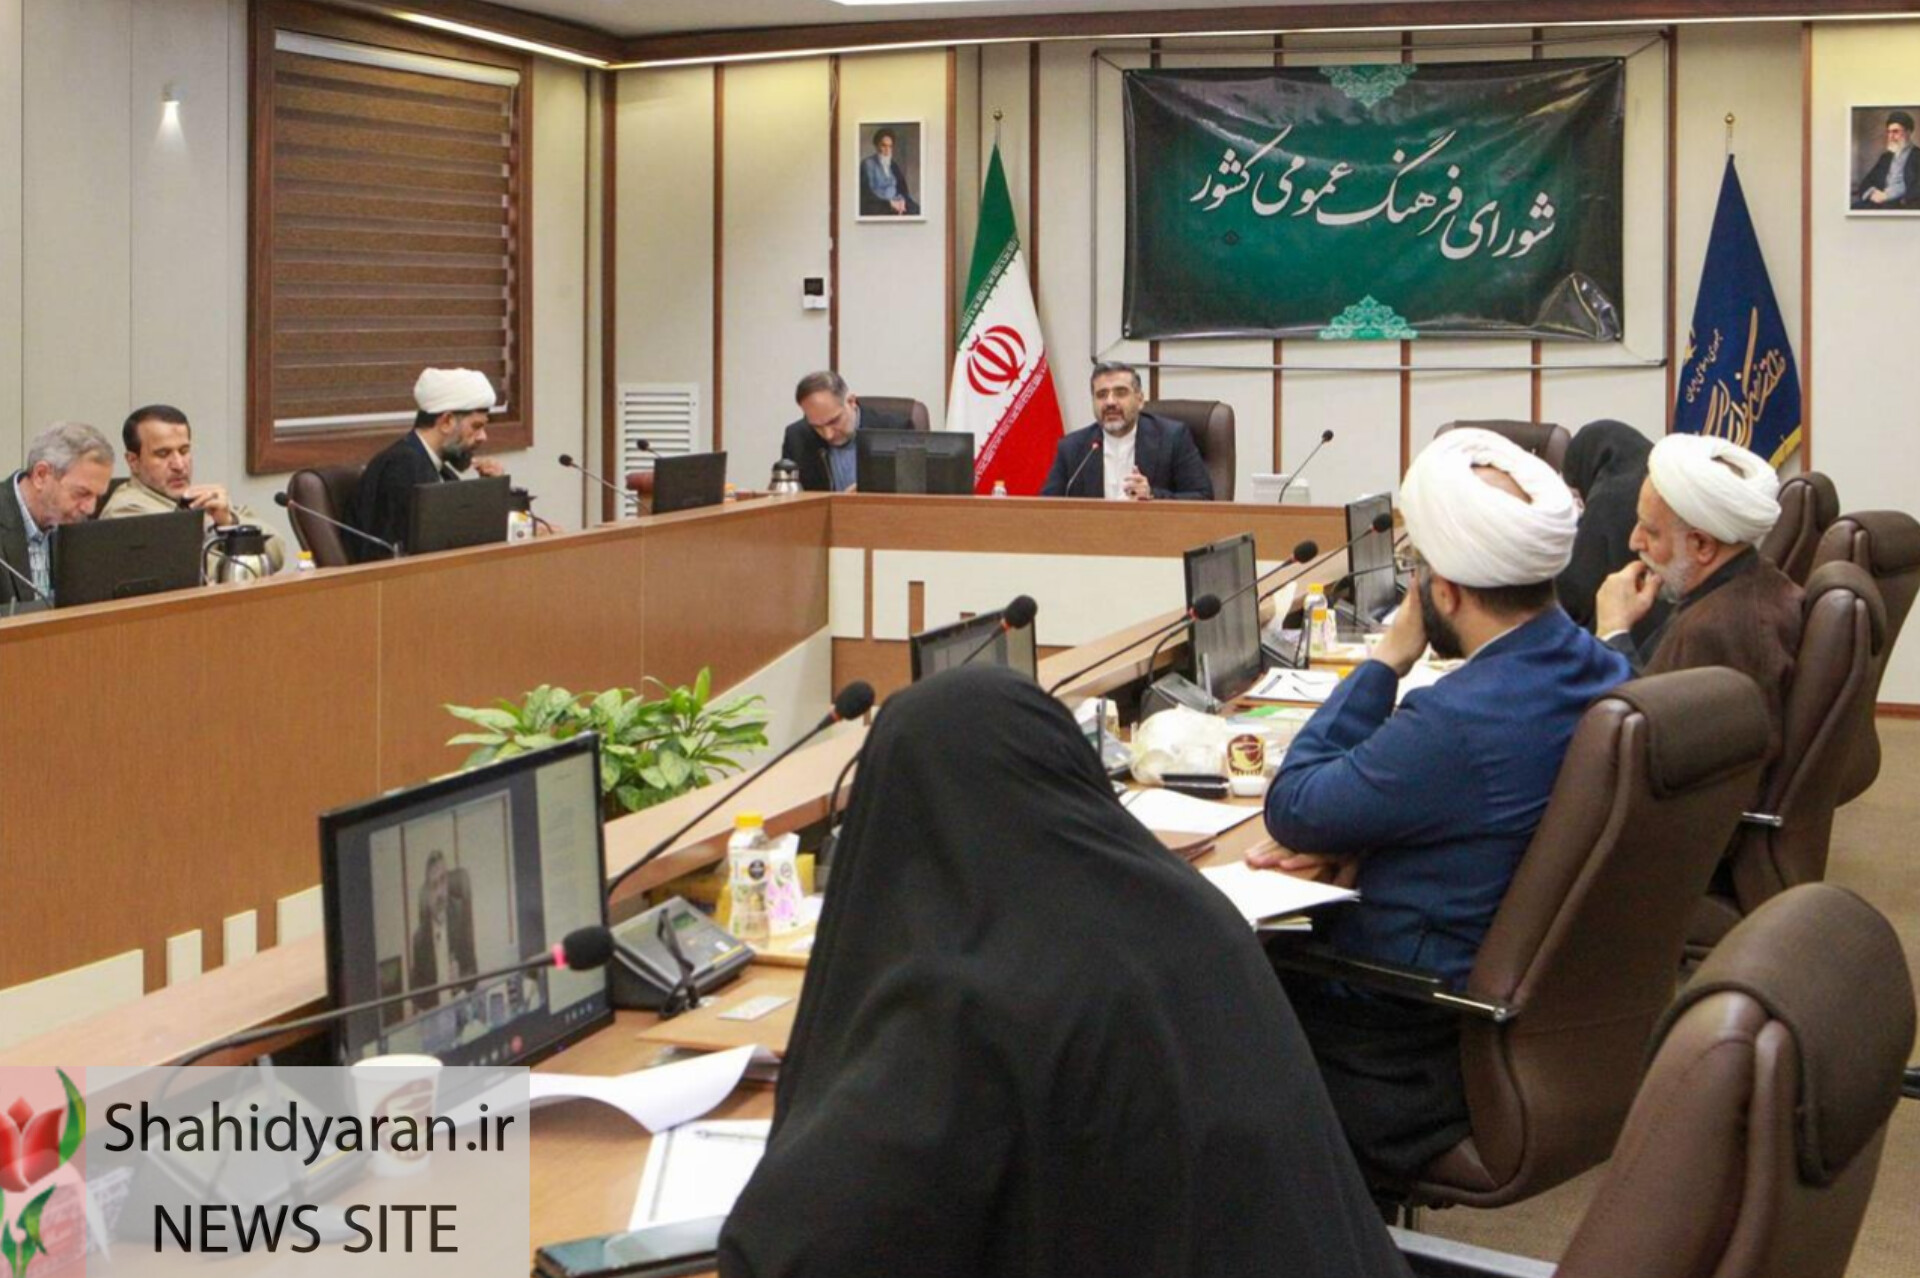 وزیر فرهنگ در جدیدترین جلسه شورای فرهنگ عمومی و در پی تصویب روز «نثر فارسی» مطرح کرد: